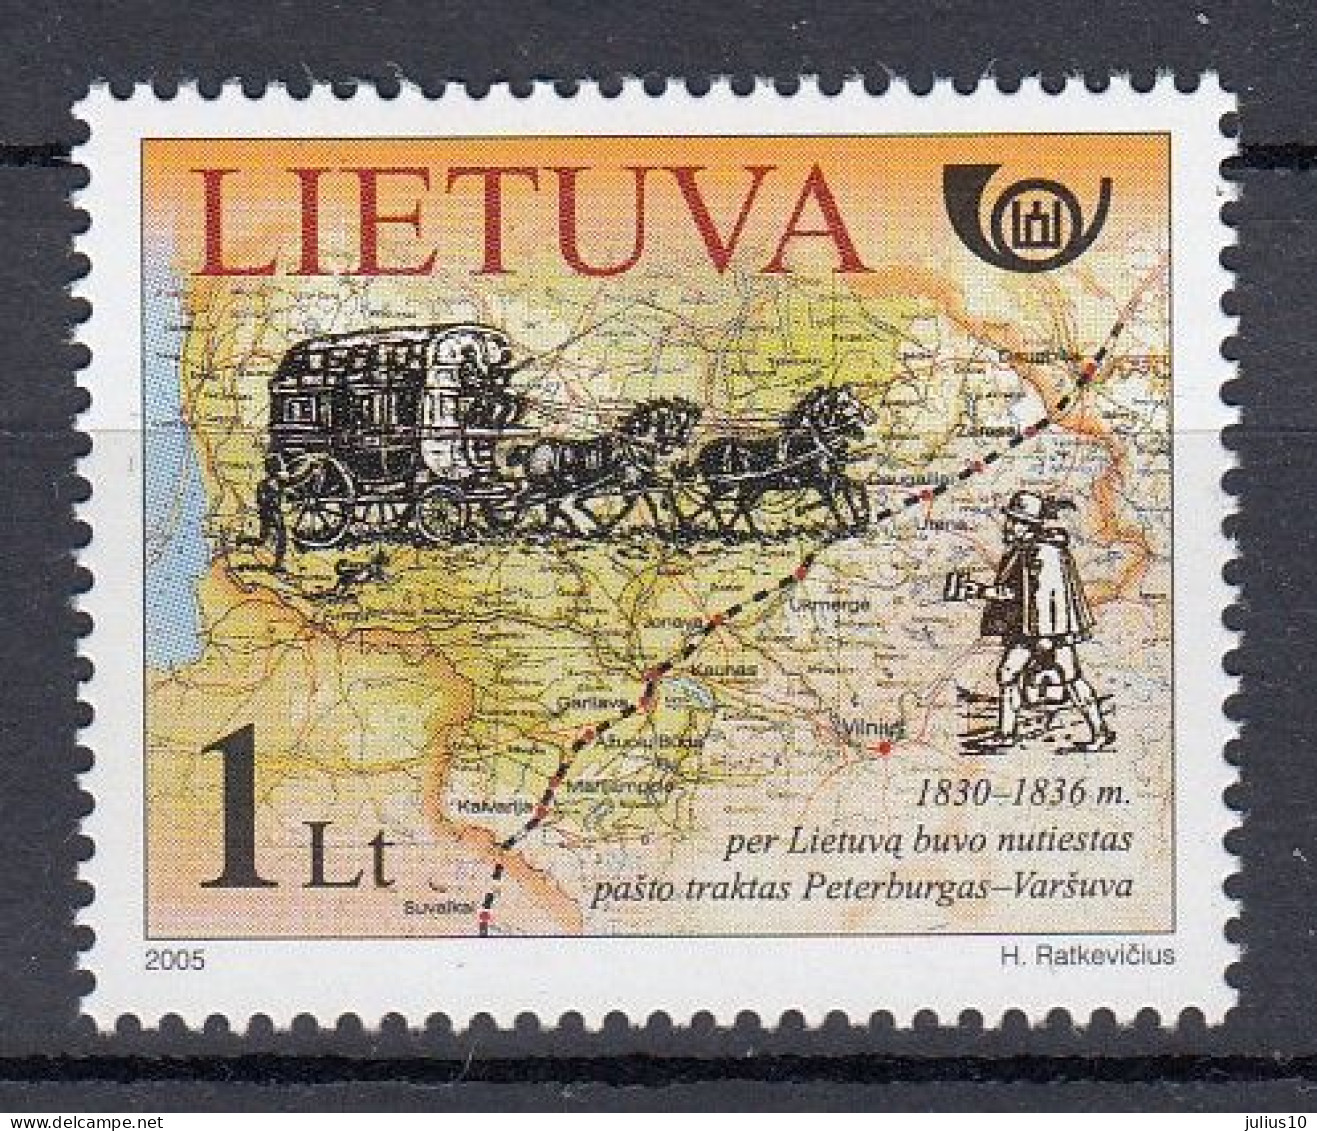 LITHUANIA 2005 History Map MNH(**) Mi 888 #Lt974 - Lithuania